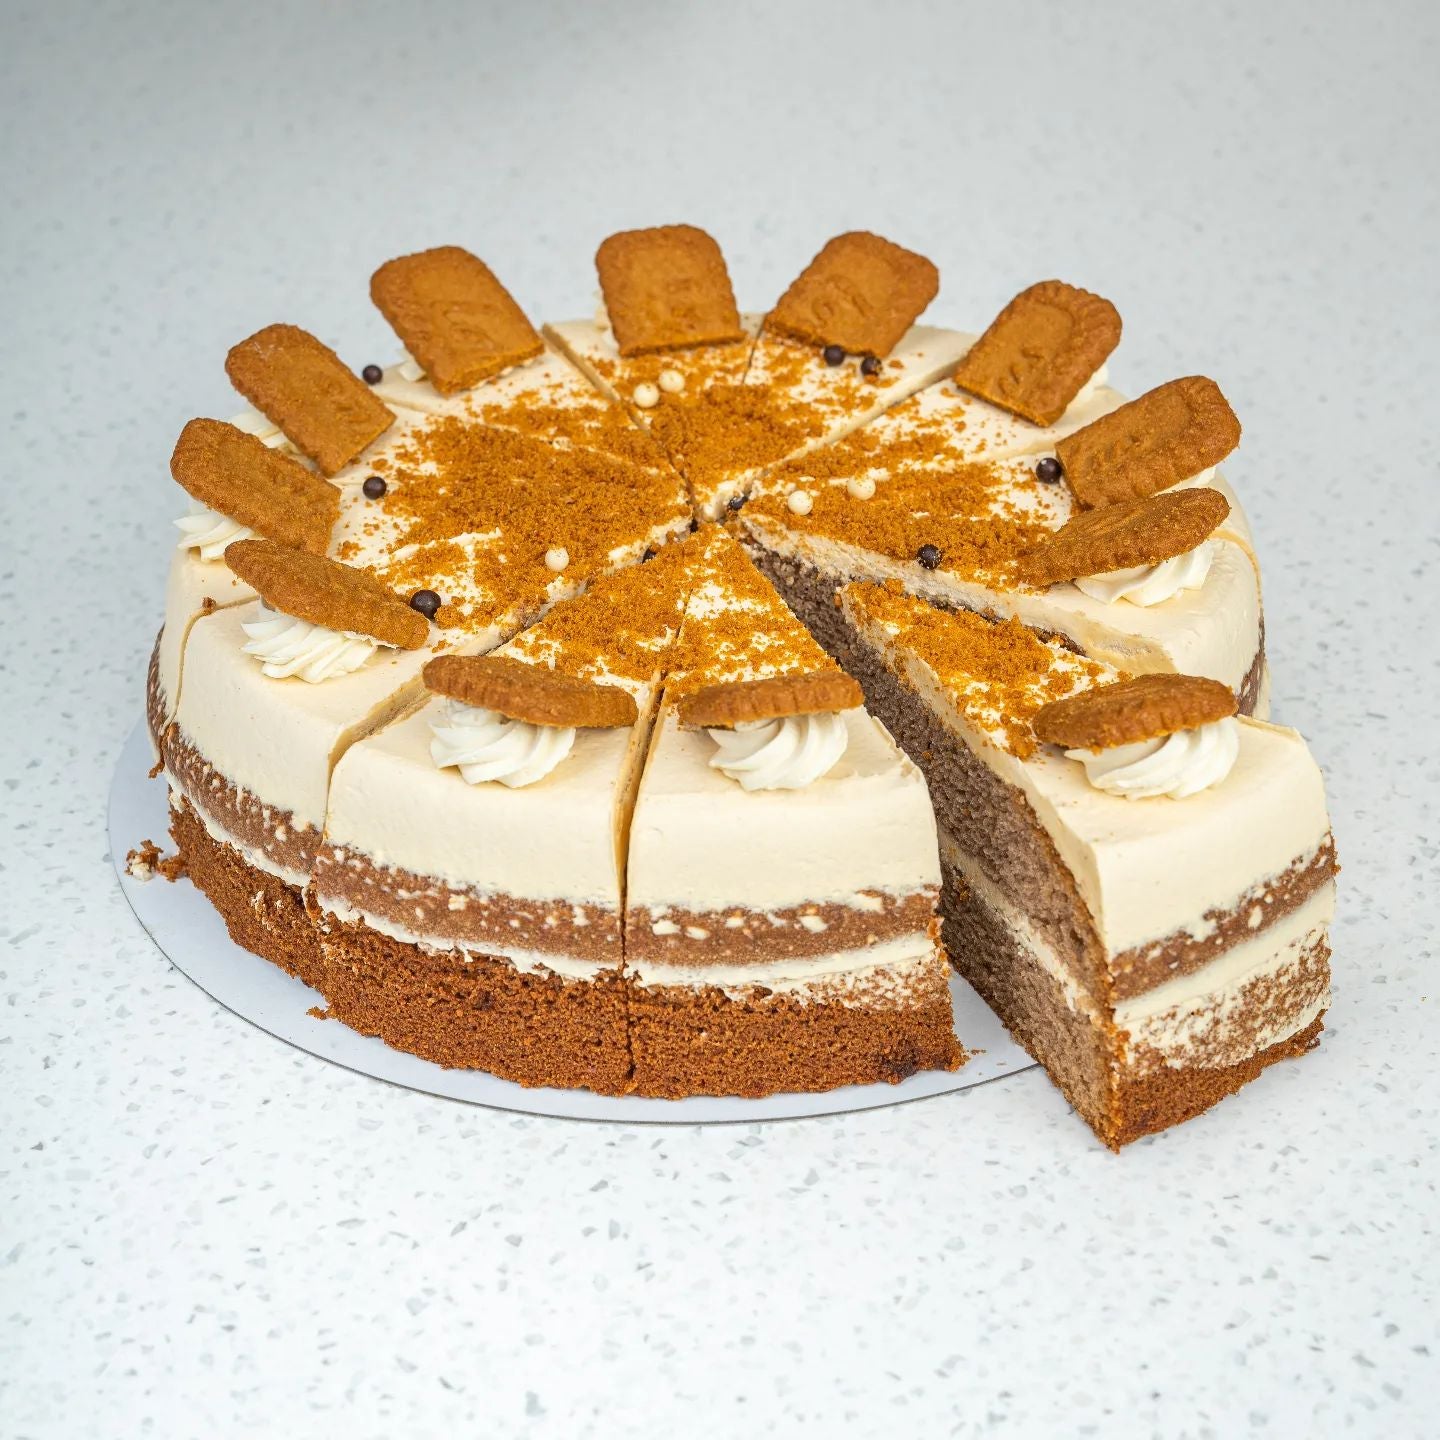 Round-shaped Creamy Lotus Cake